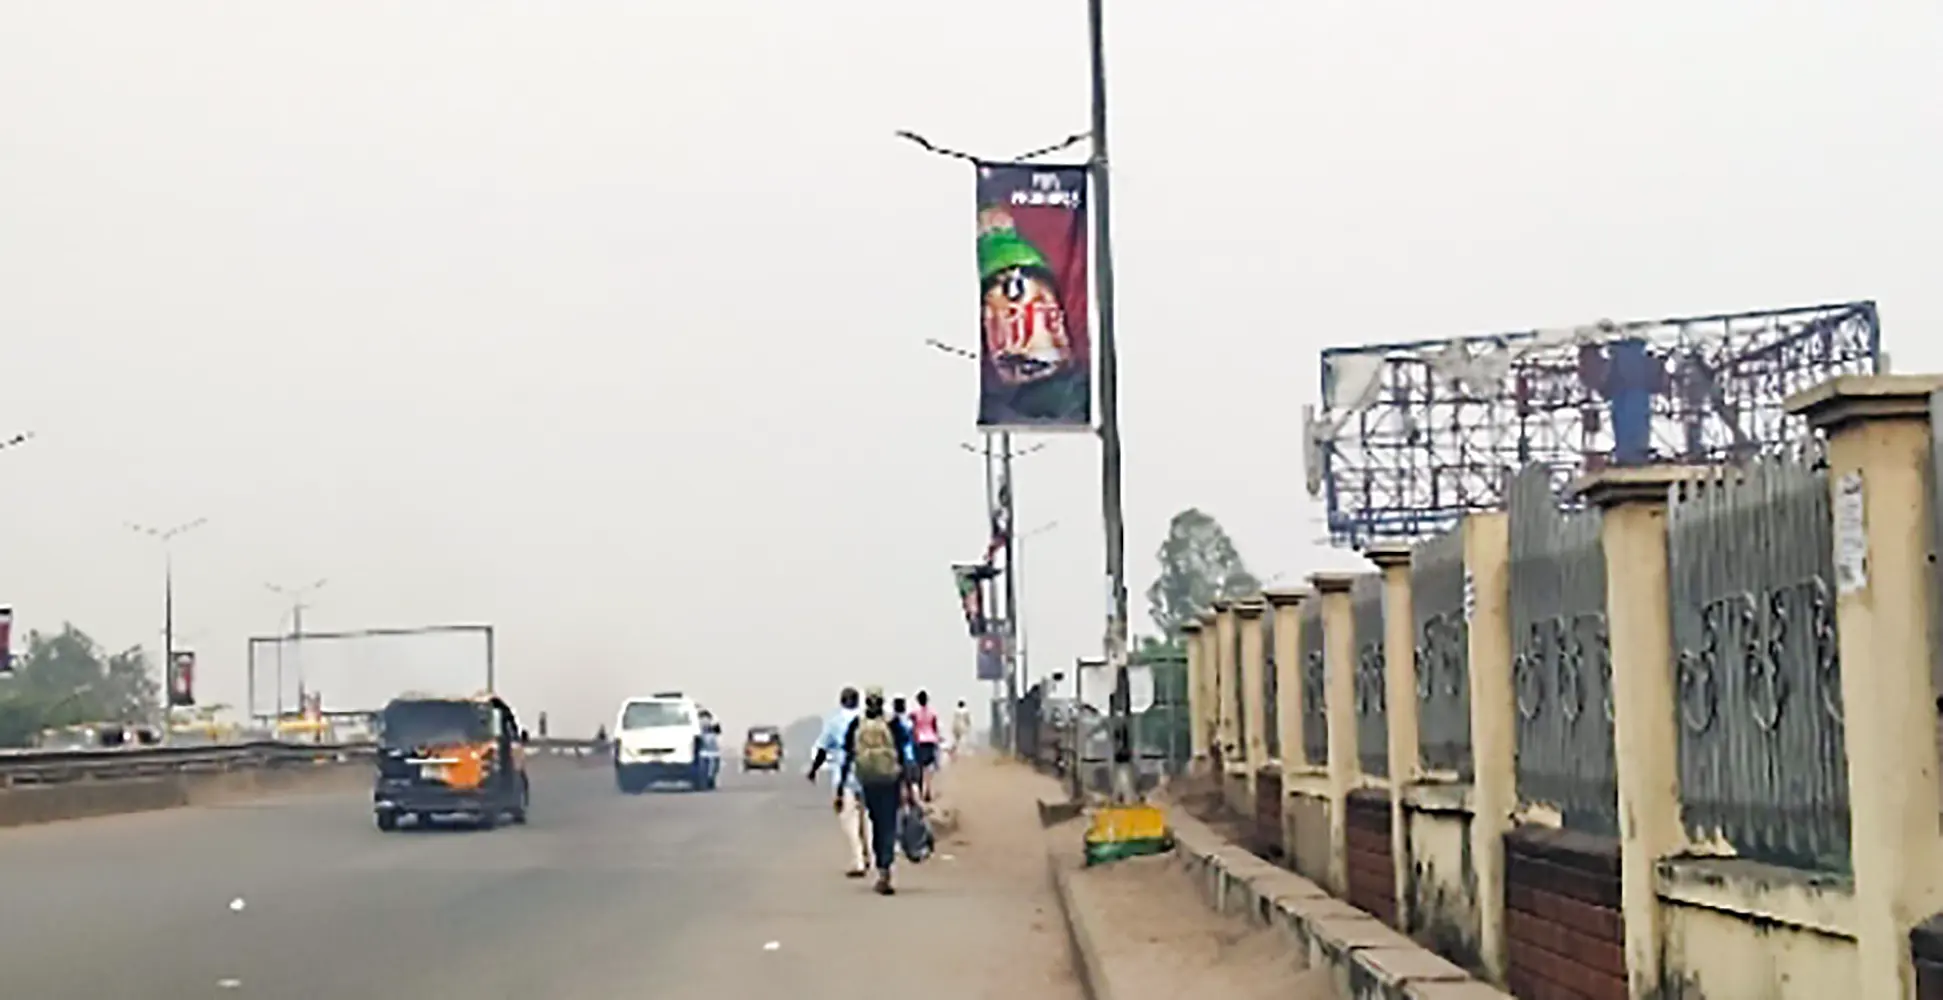 Lamp Poles billboard - Iweka Street